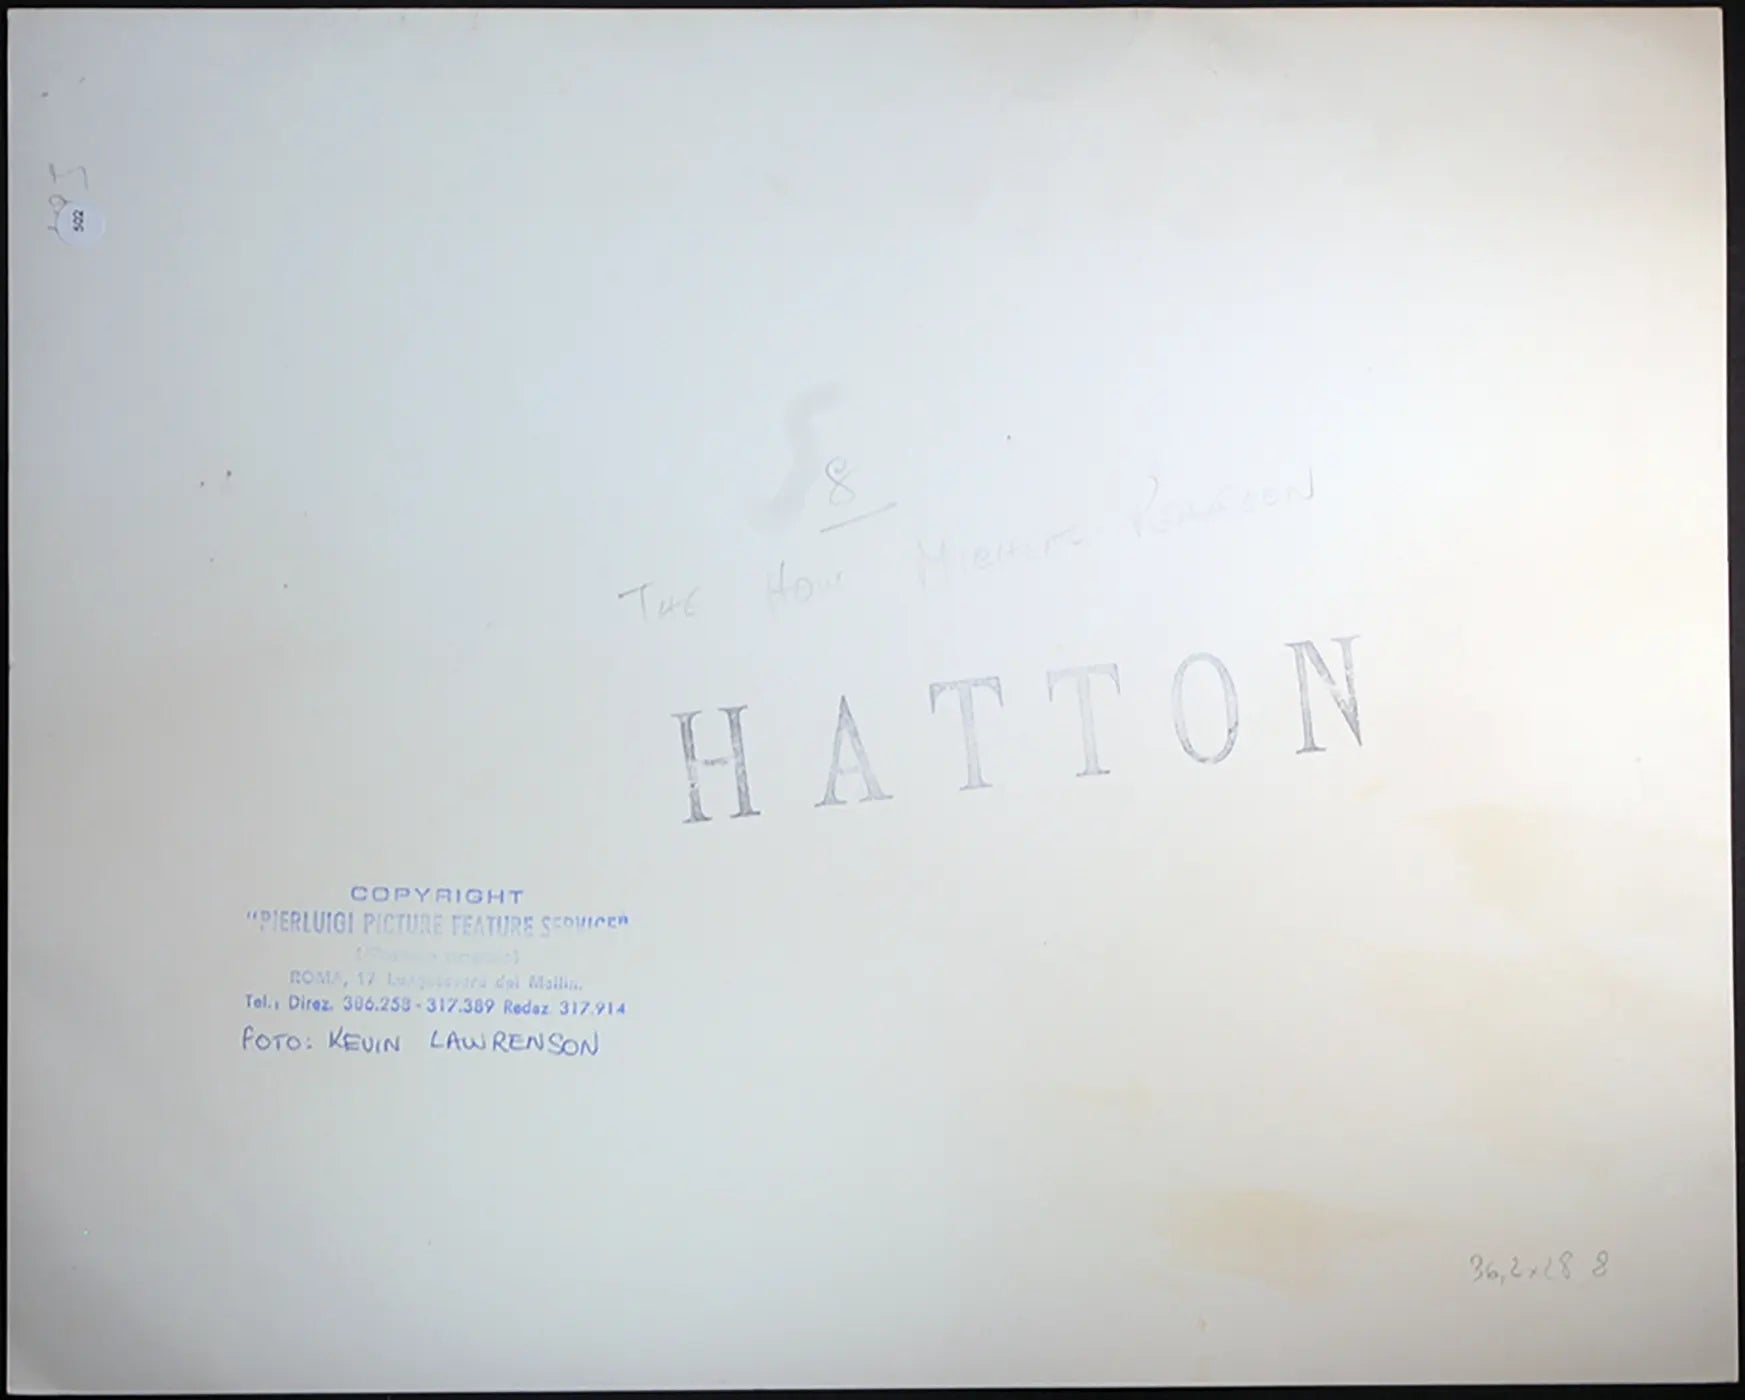 Michael Pearson Ft 502 - Stampa 30x37 cm - Farabola Stampa ai sali d'argento